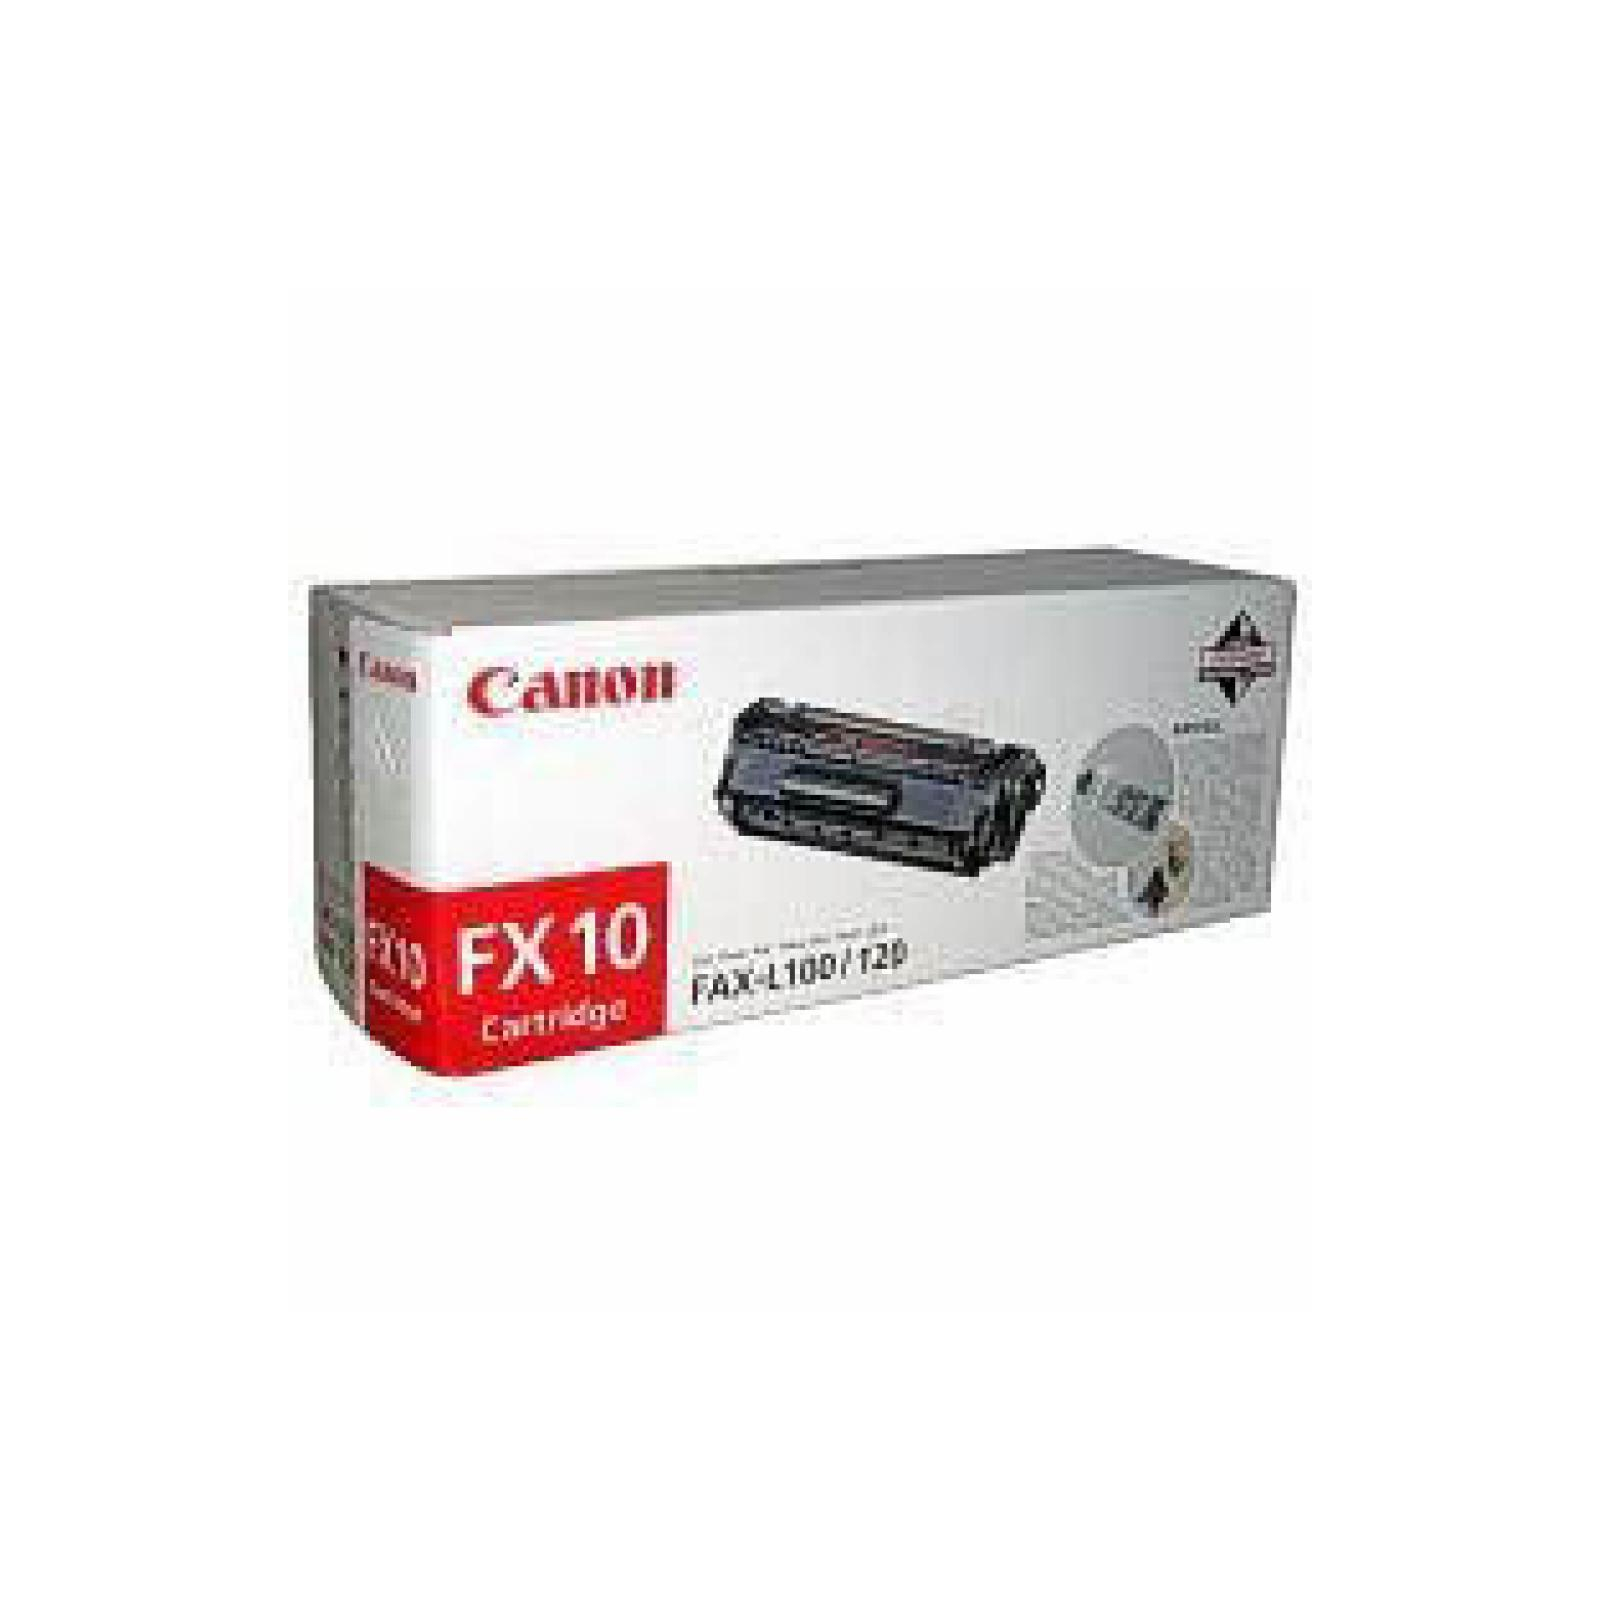 Послуга відновлення картриджа Canon FX-10 Brain Service